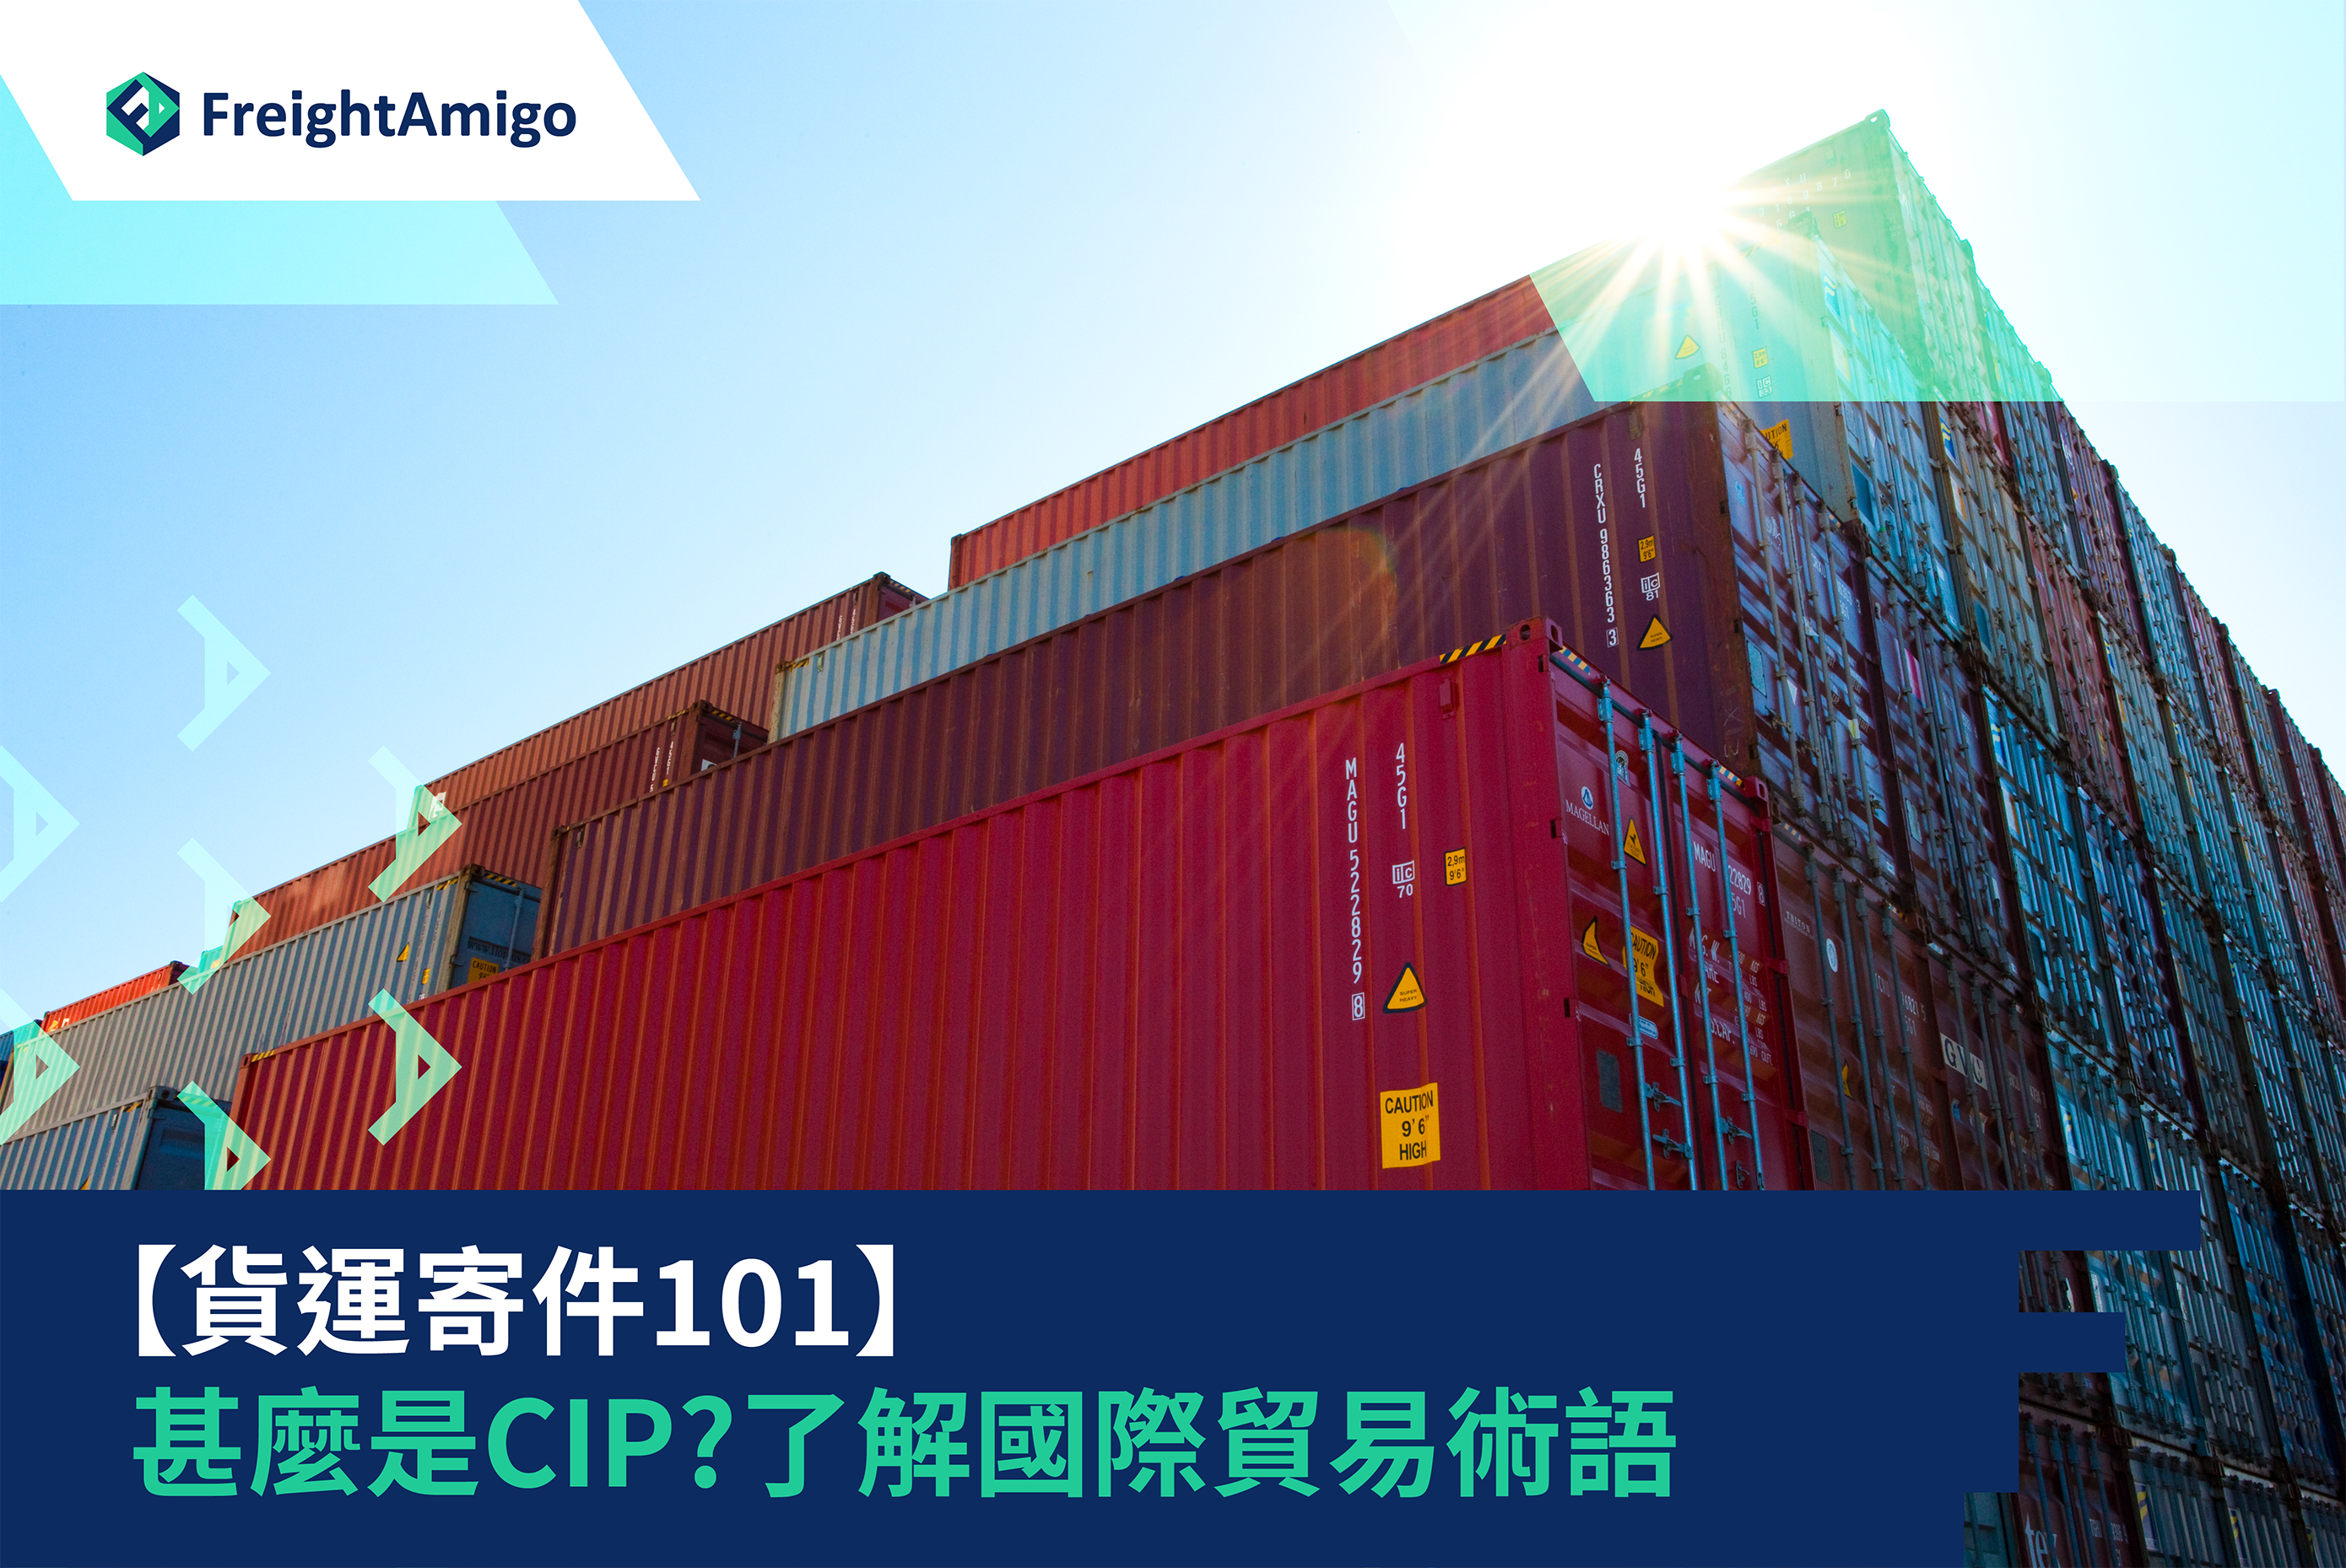 【貨運寄件101】CIP運費和保險費付至|  國際貿易術語意思及用途